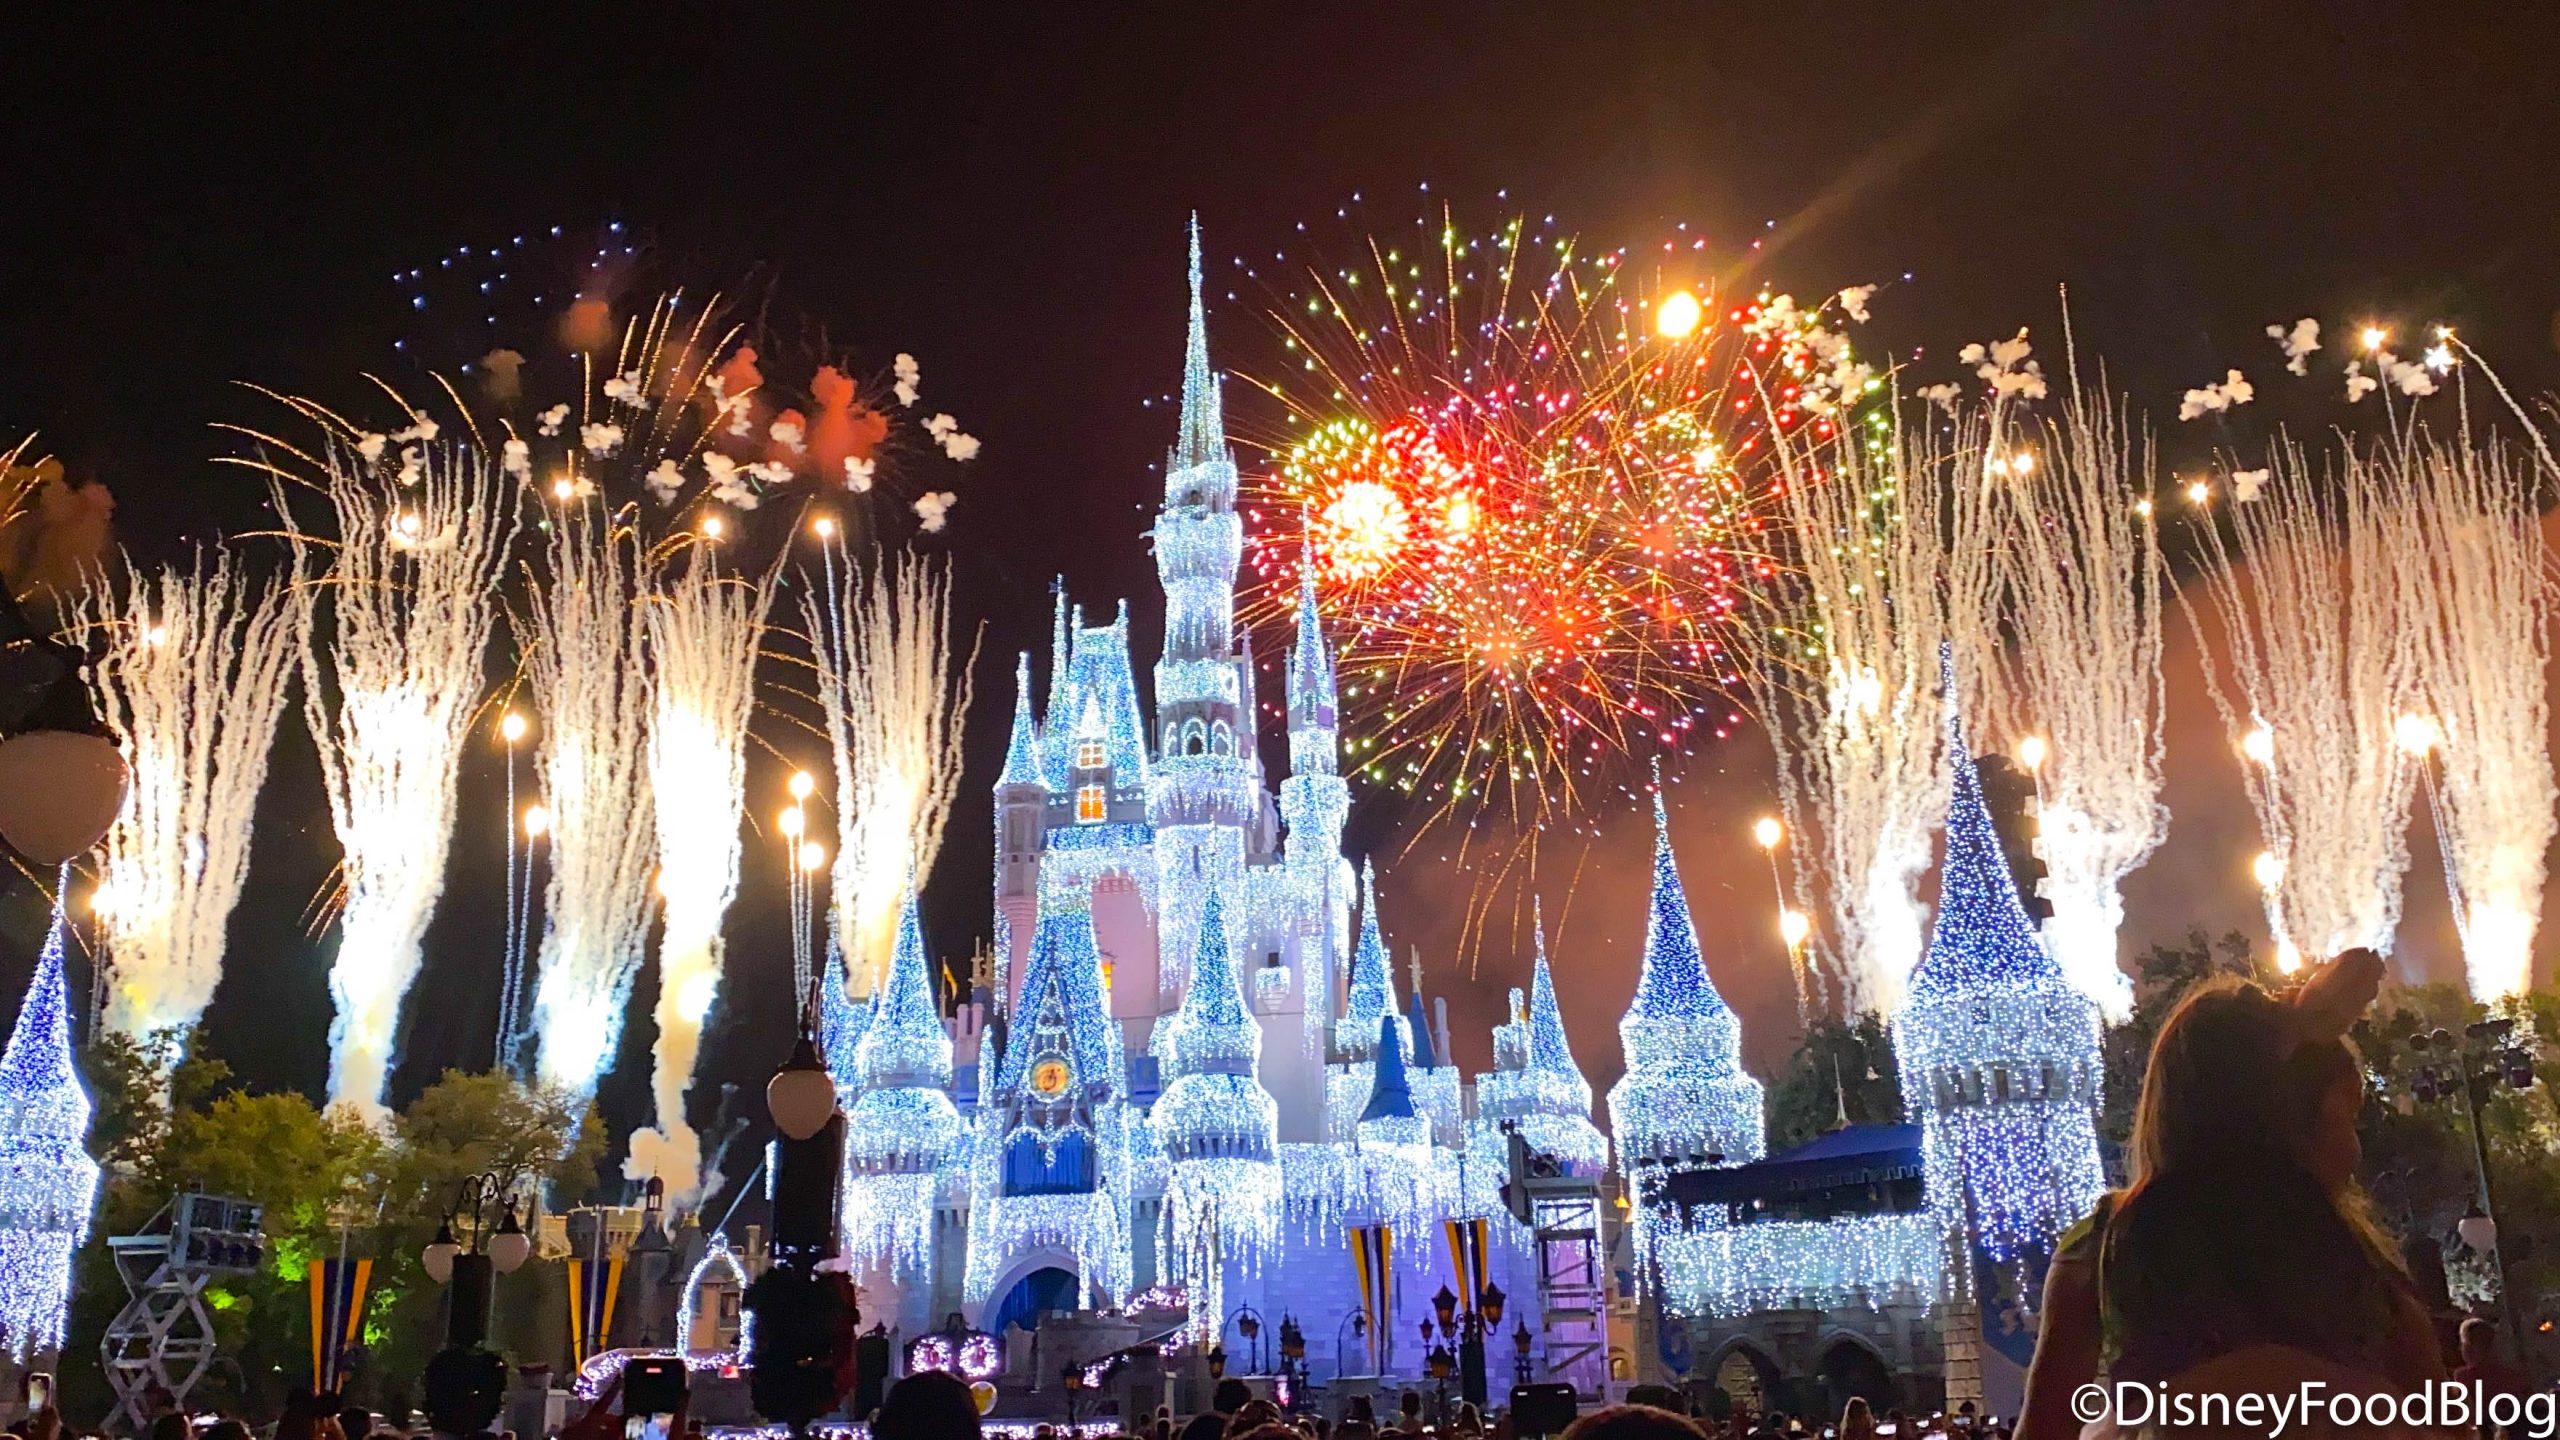 Hãy thưởng thức những hình nền Disney World ấn tượng và tràn đầy màu sắc, để mở đầu một ngày mới với niềm hứng khởi. Hình ảnh sẽ đưa bạn đến thế giới kỳ diệu của Disney, nơi mọi giấc mơ thành hiện thực.